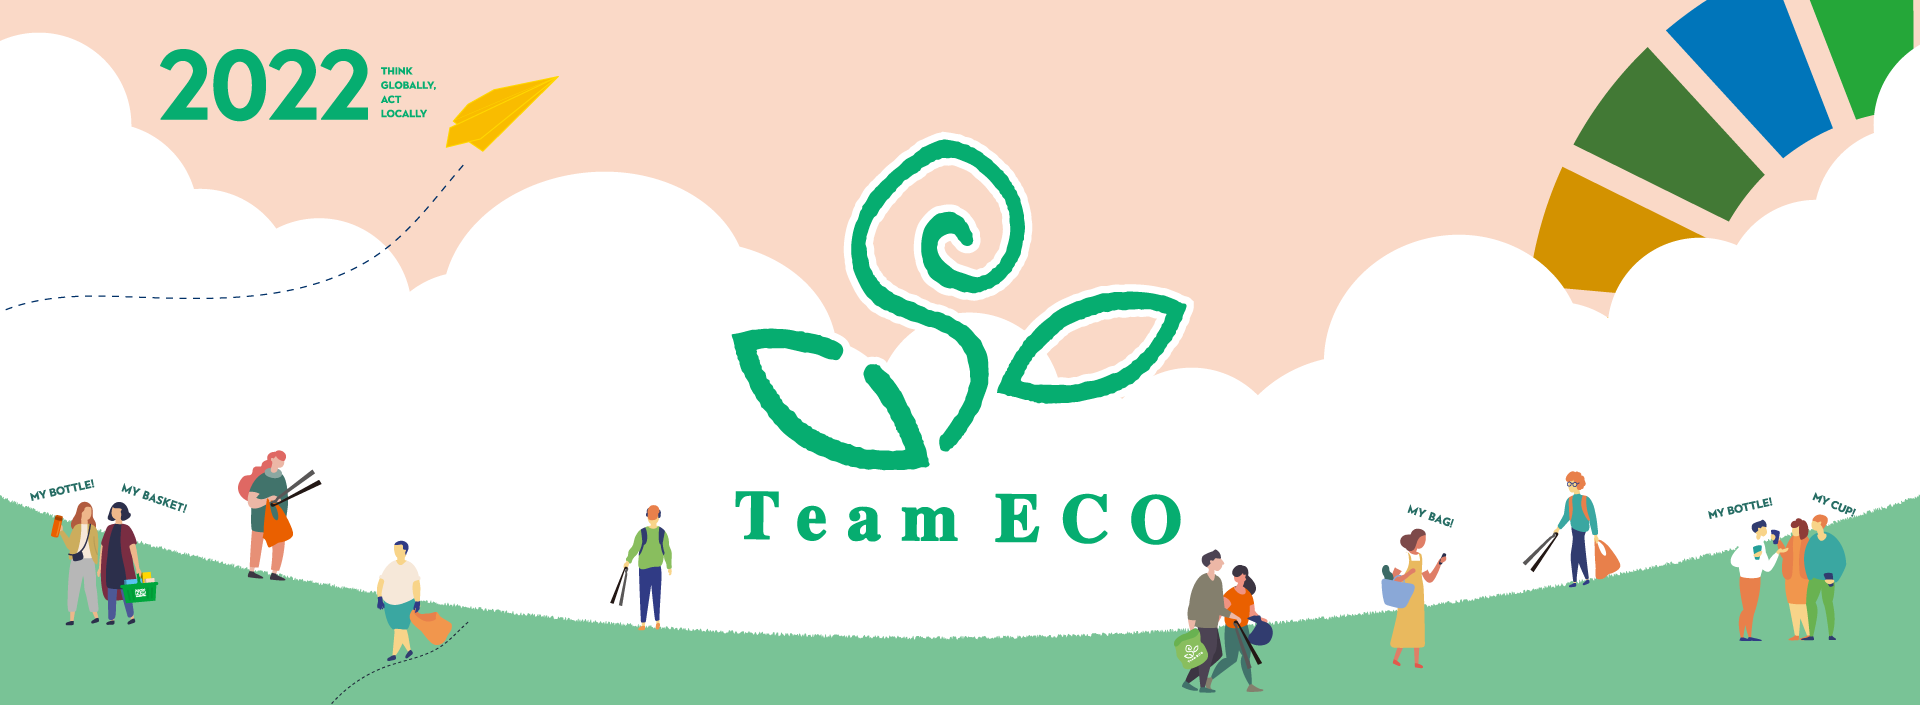 緑に囲まれた弥彦公園でTeam ECO Work!を開催